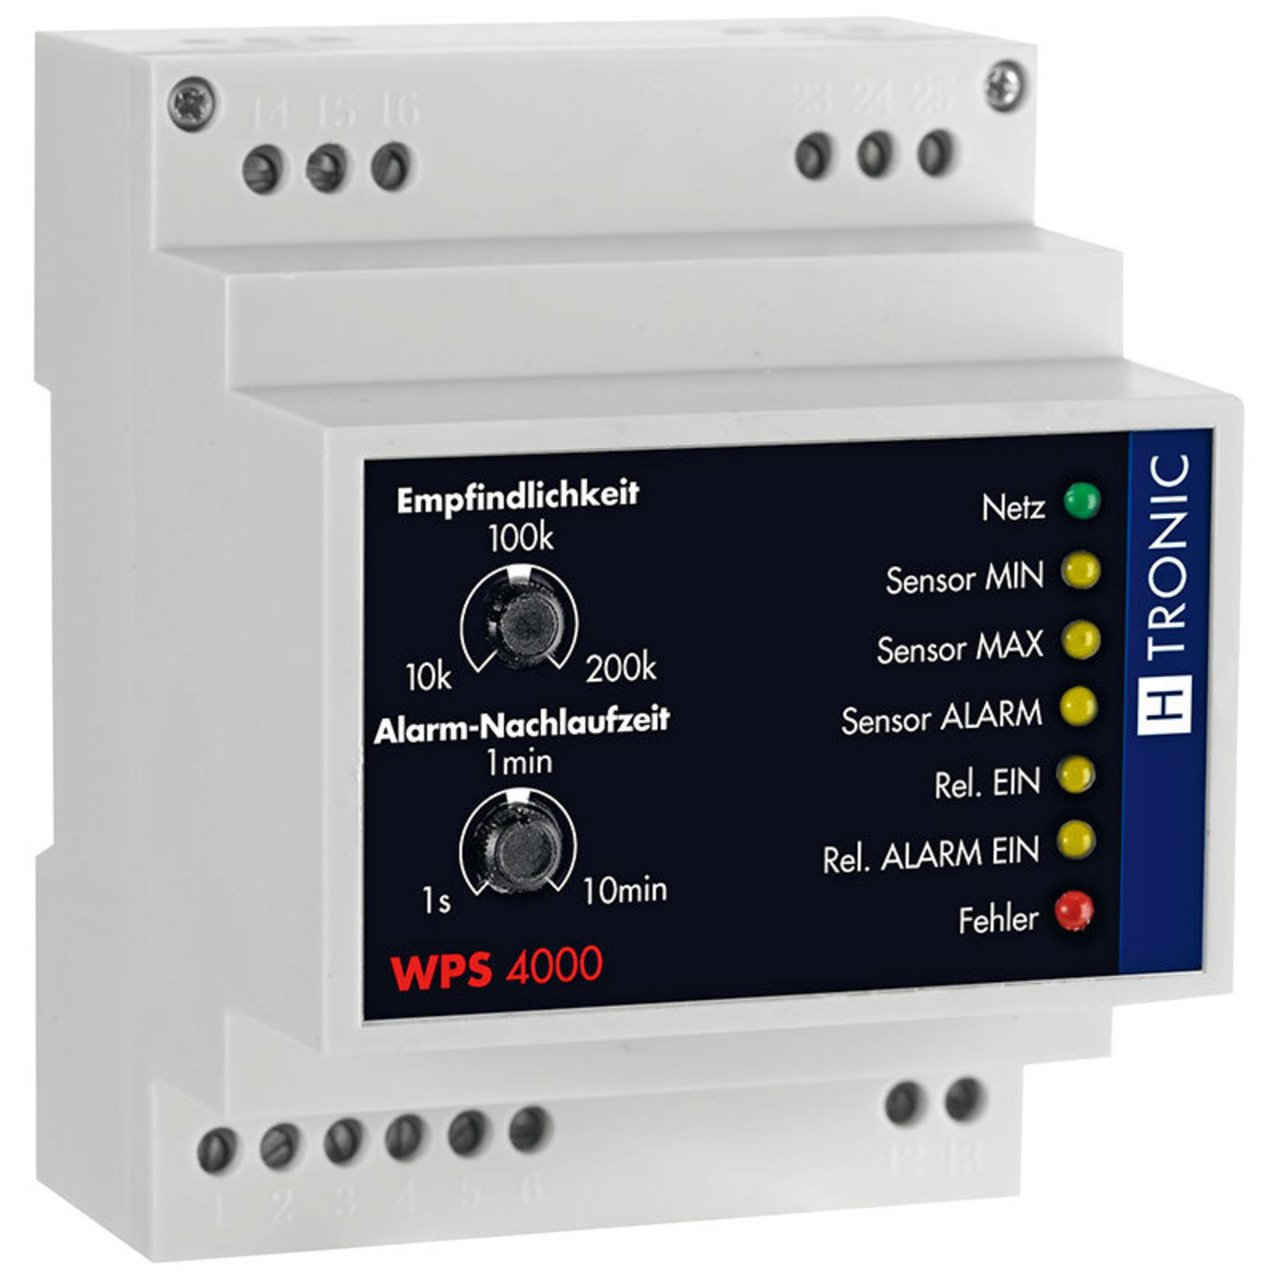 H-Tronic WPS 4000 Füllstands-Differenzschalter mit Alarm unter Haustechnik